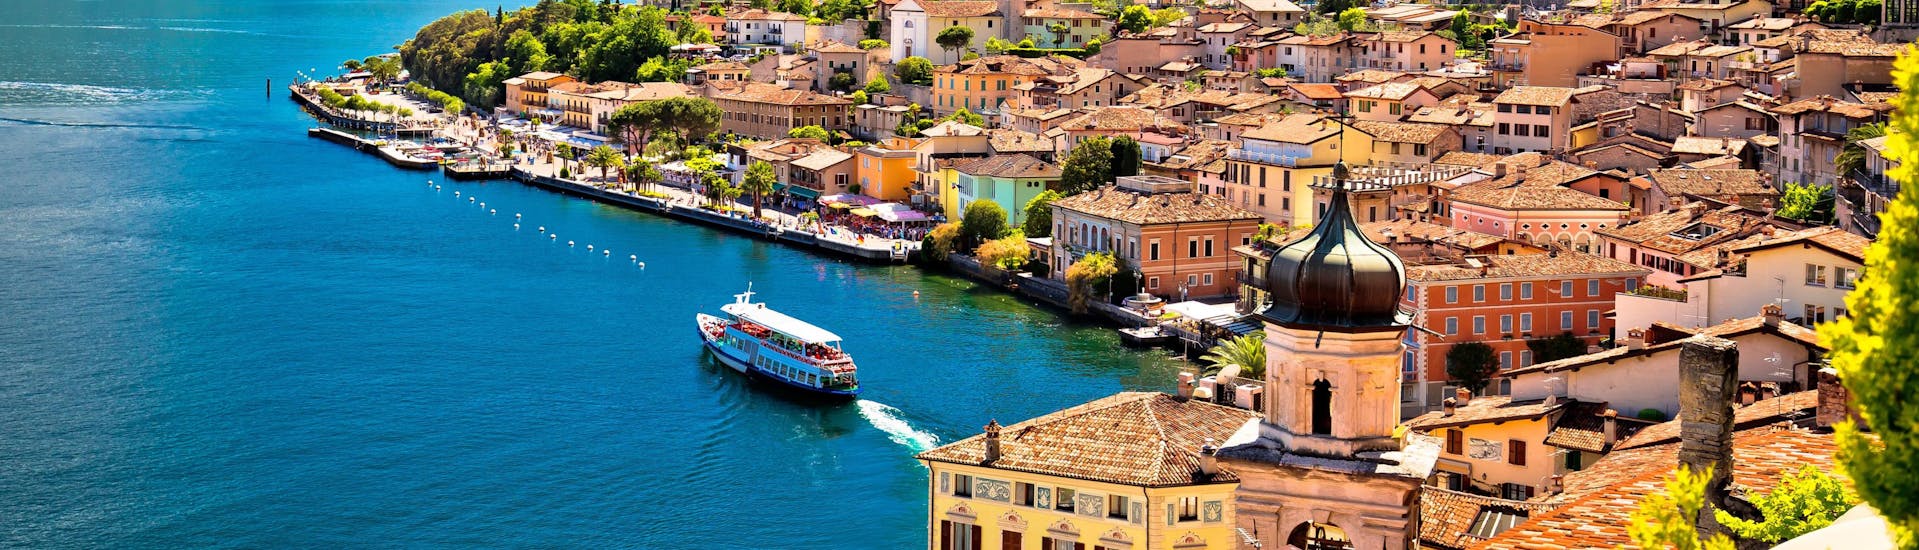 De stad Limone sul Garda aan het Gardameer in Italië.